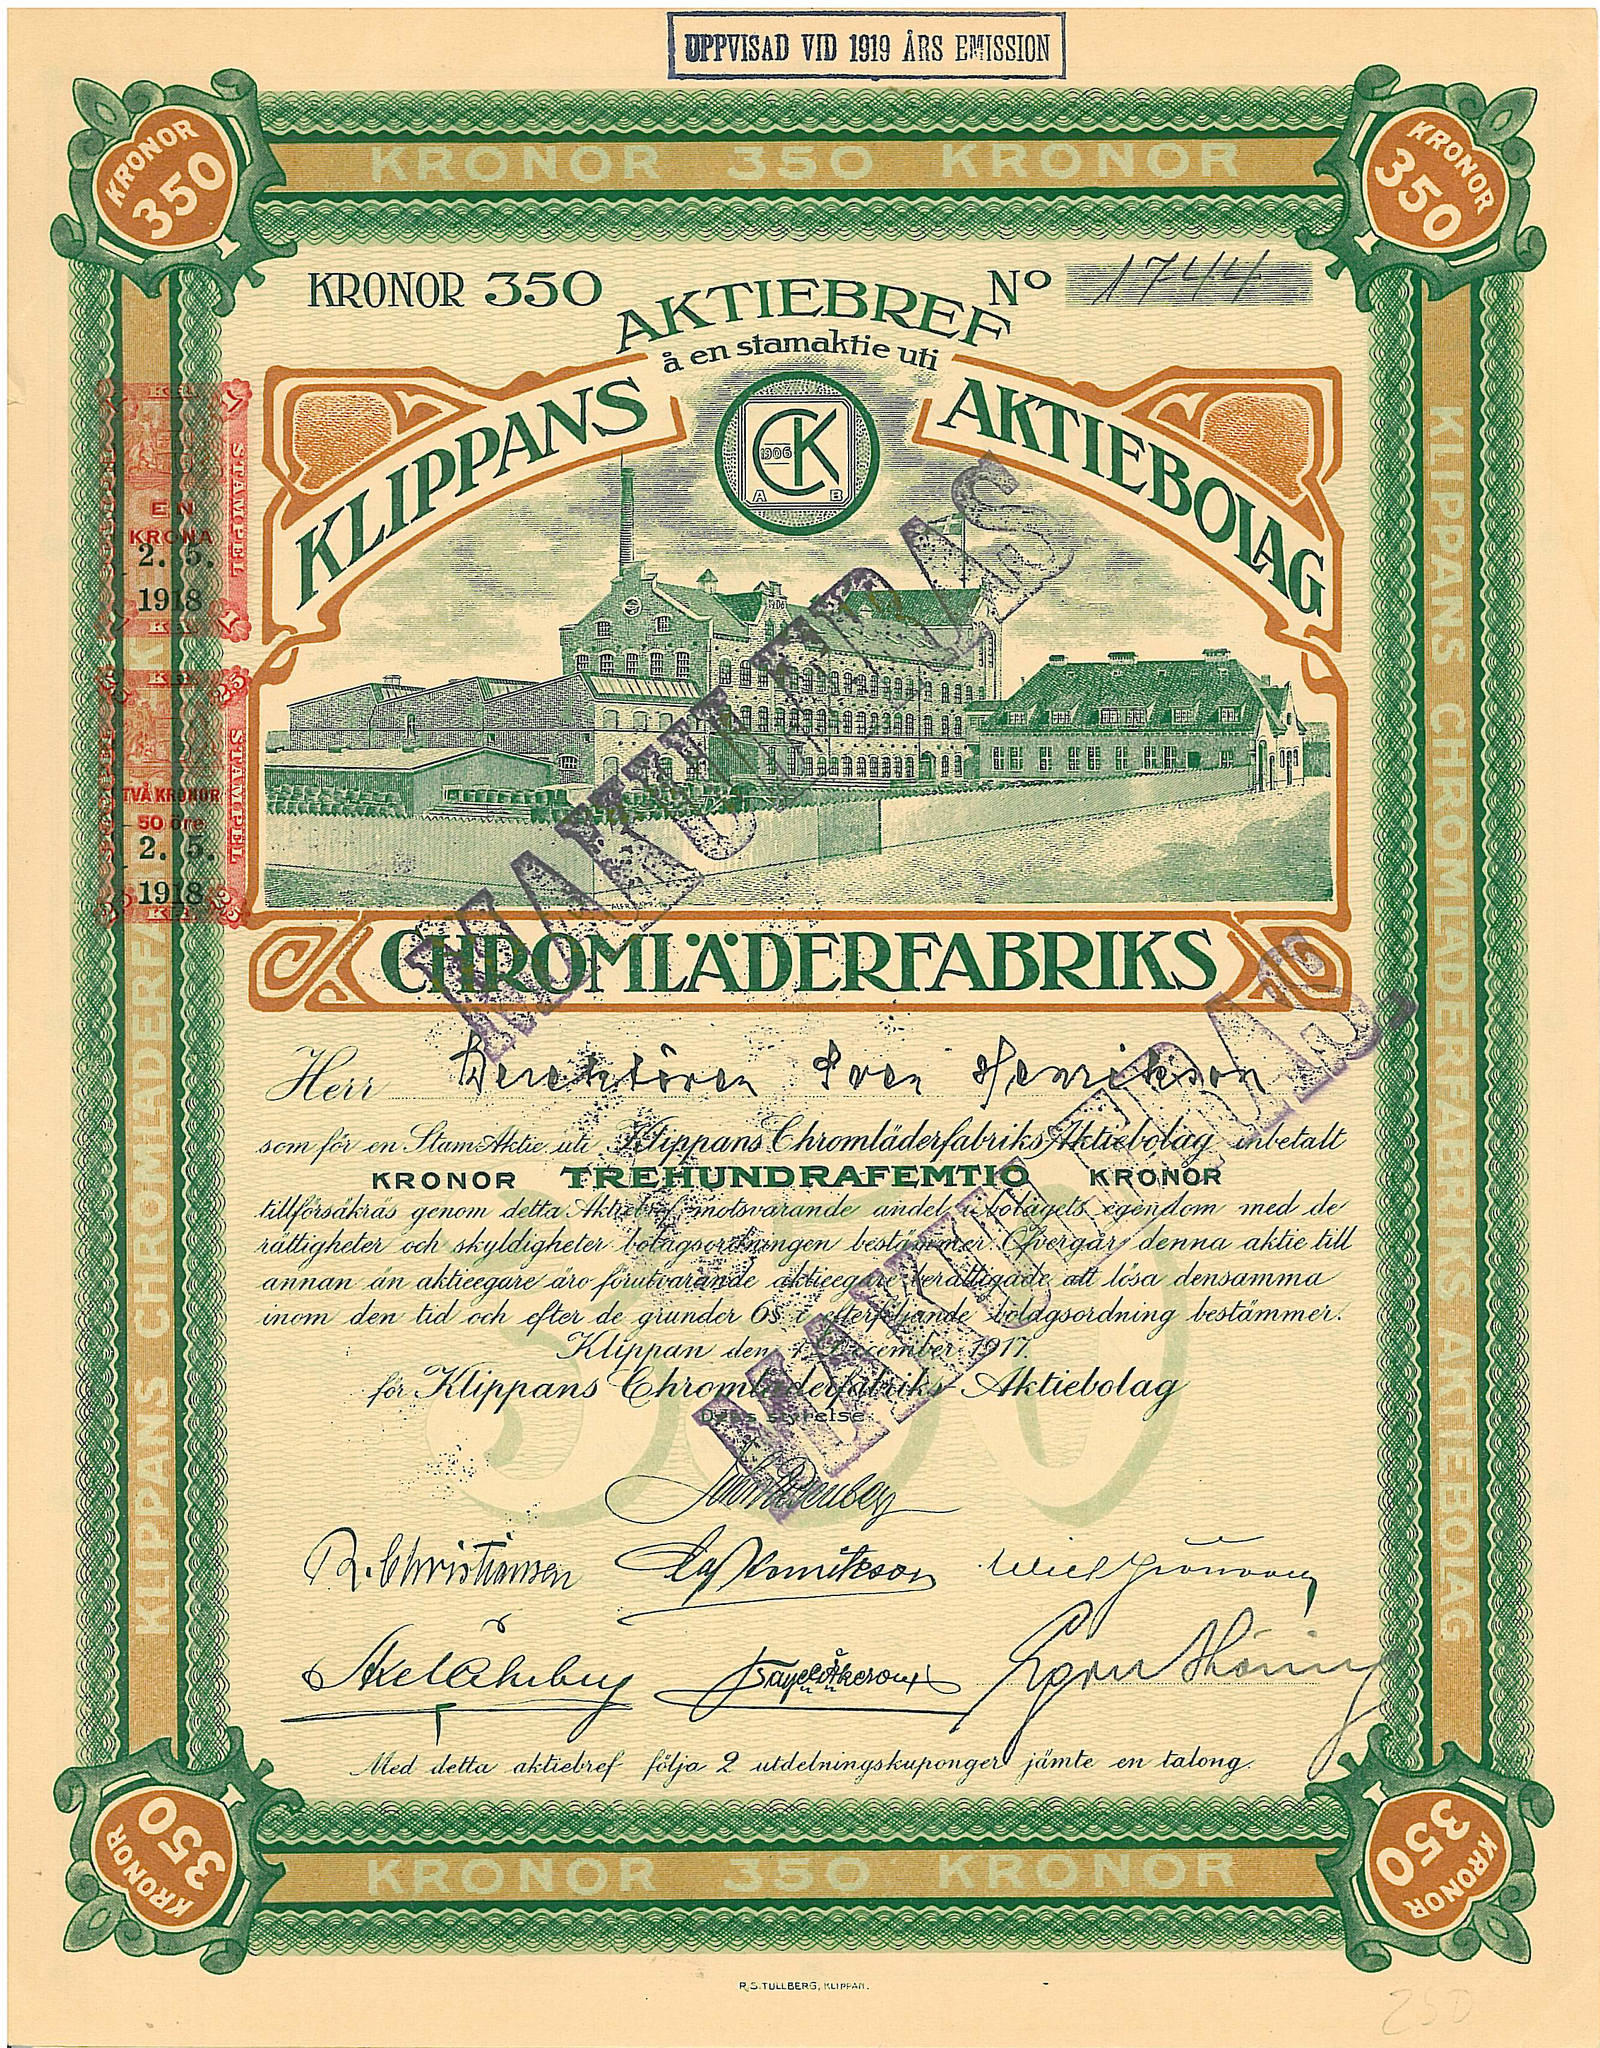 Klippans Chromläderfabriks AB, 1917